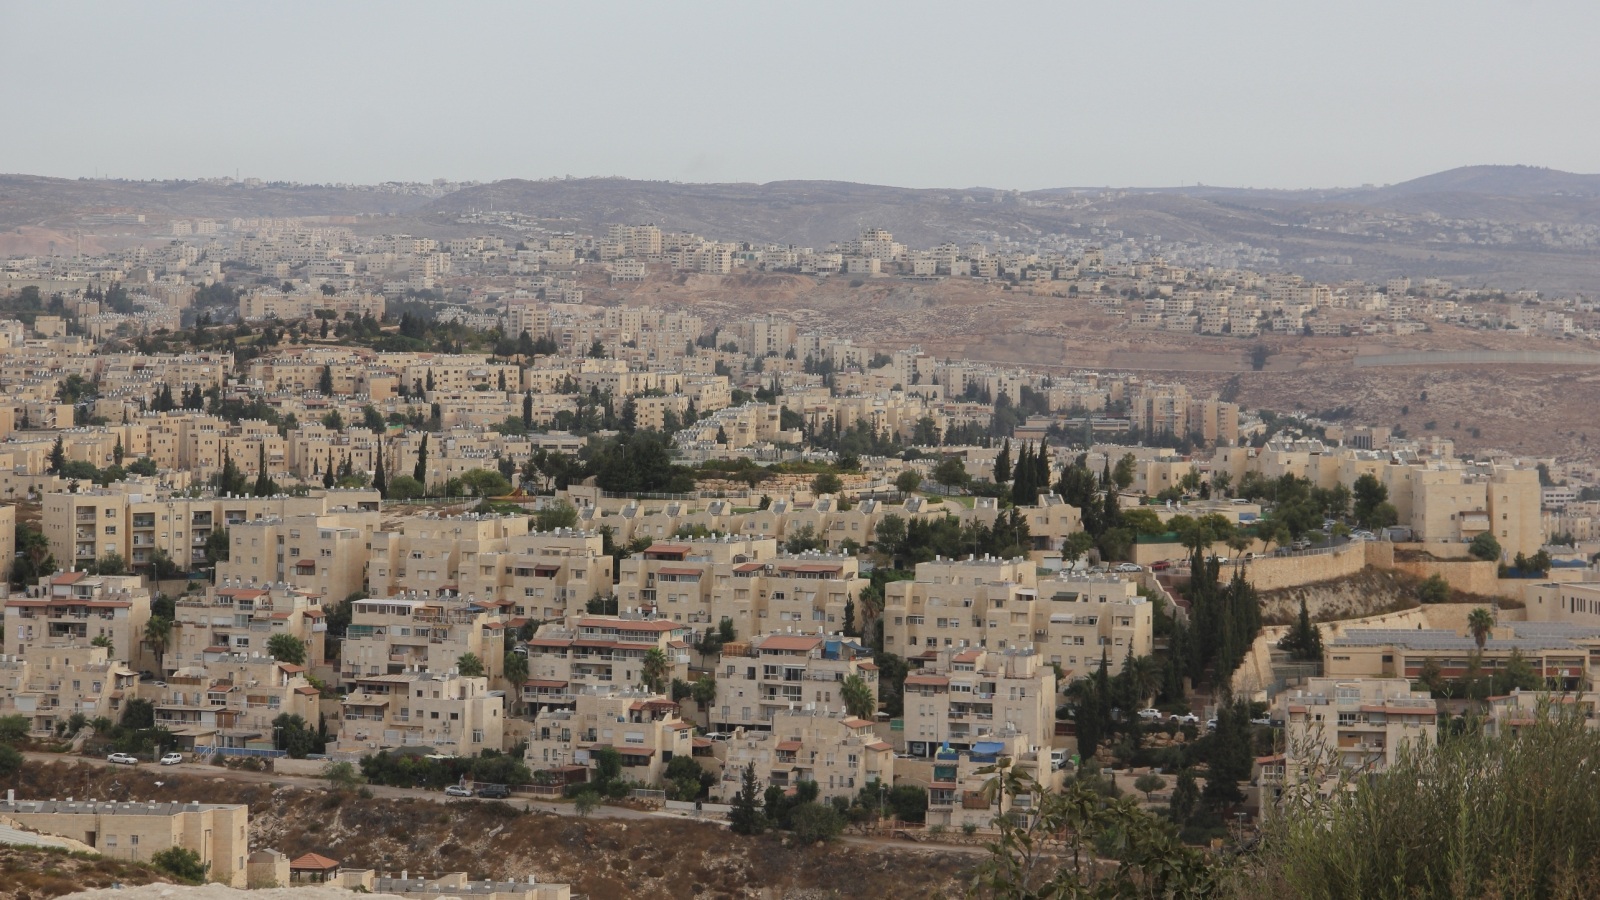 مستوطنة بسغات زئيف شمال شرق القدس تقوم سلطات الاحتلال بتوسعتها على حساب الفلسطينيين 